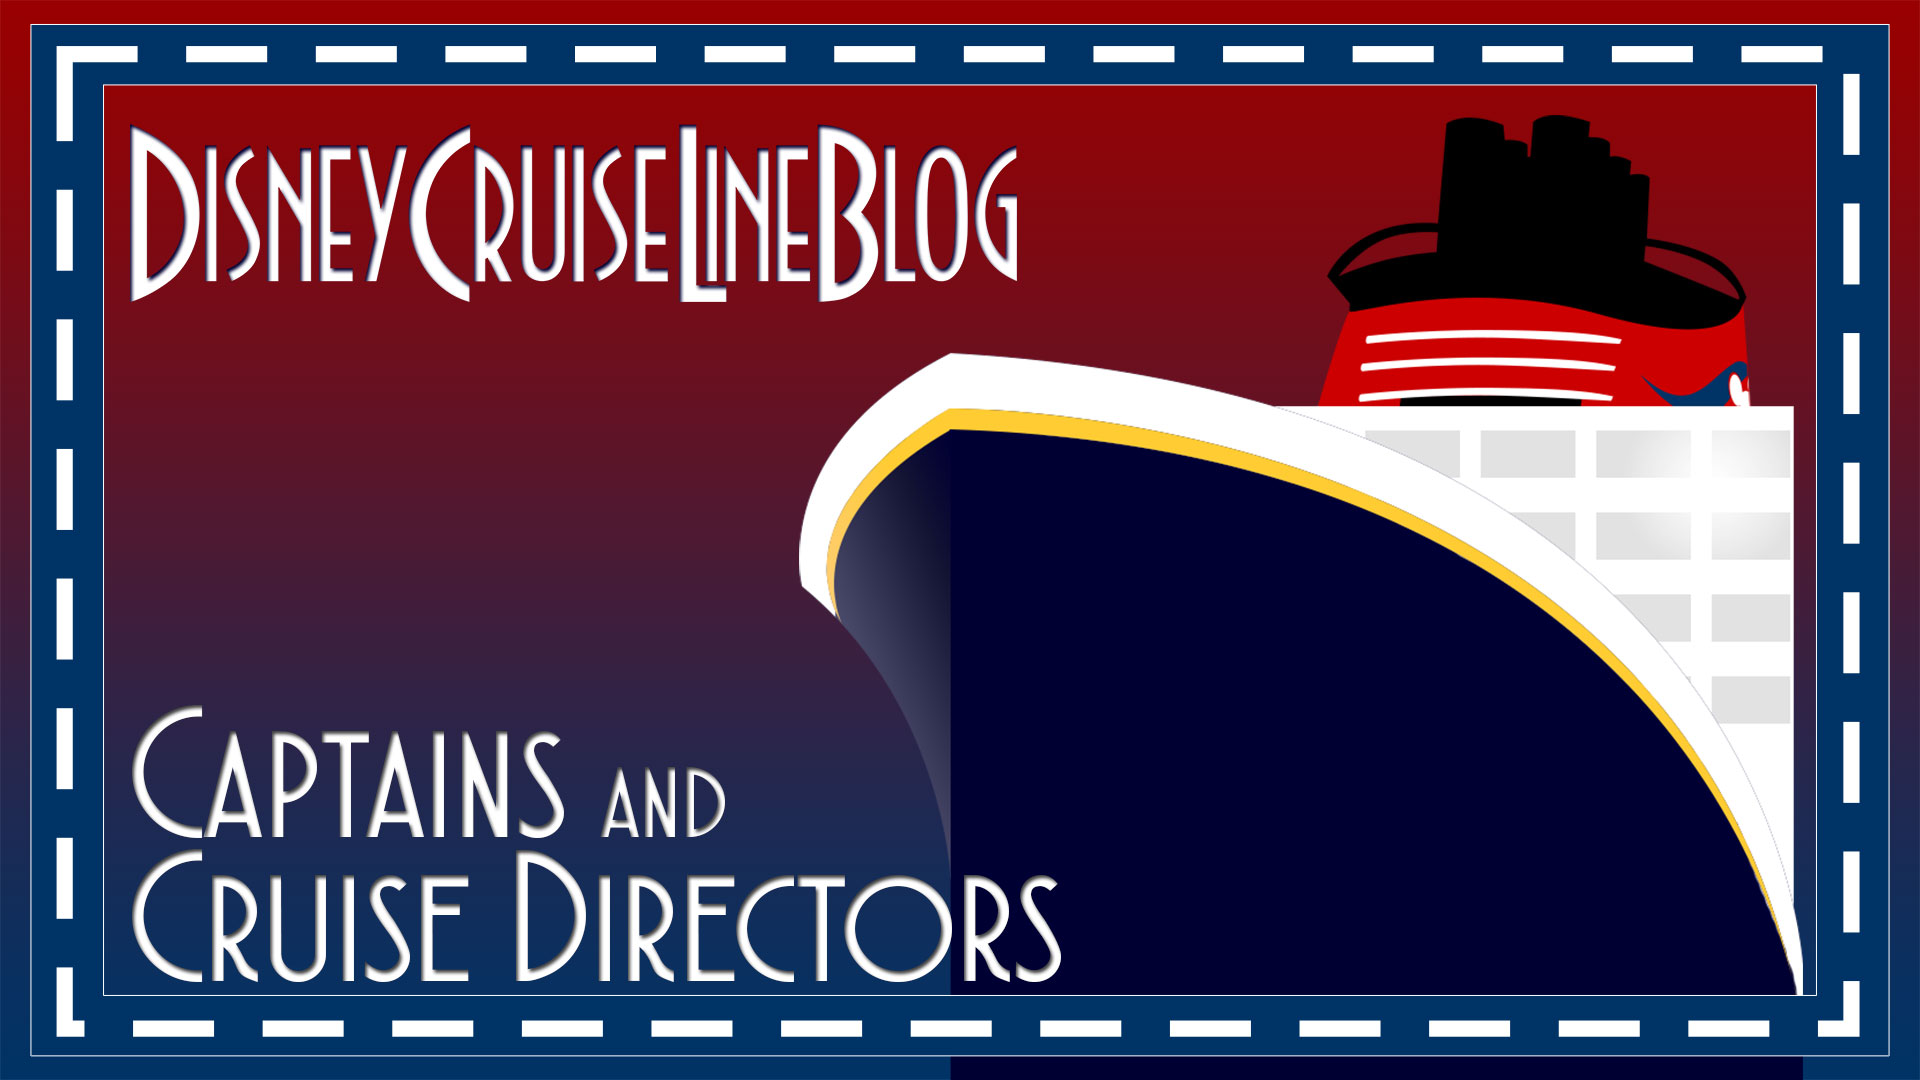 DCLBlog Captains Cruise Directors